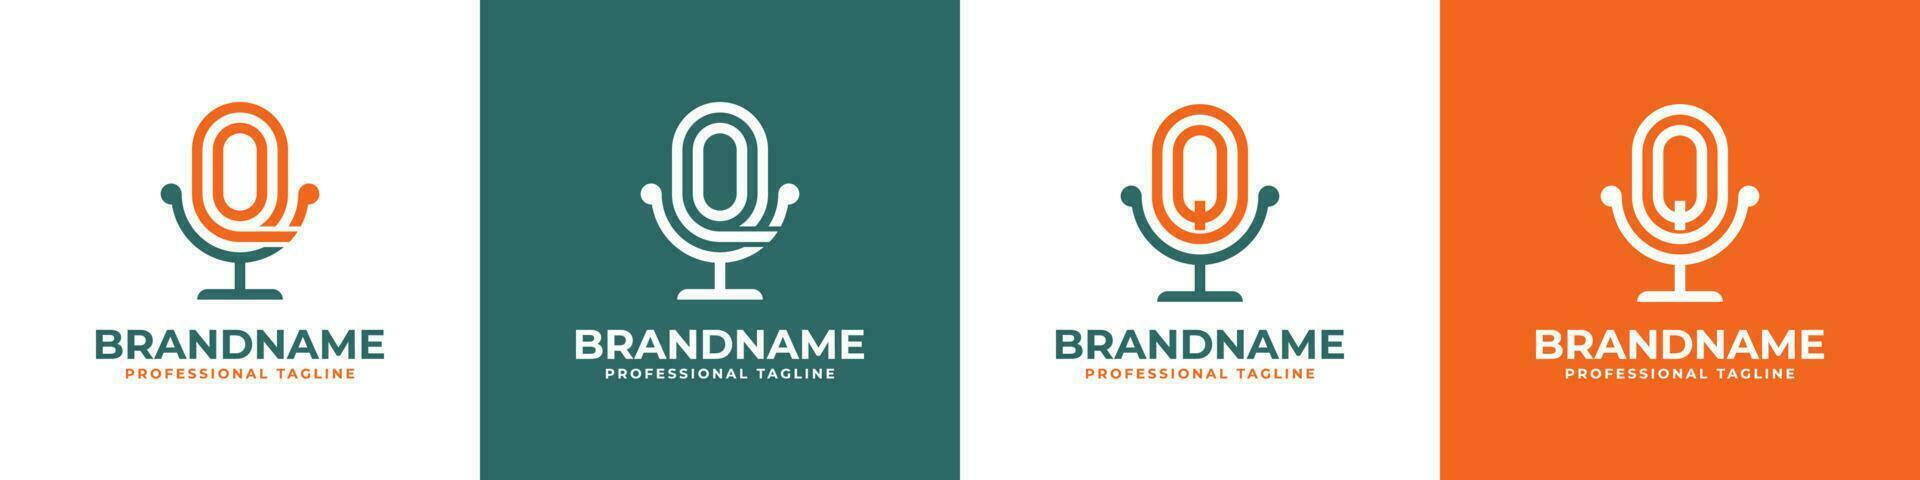 carta oq ou qo podcast logotipo, adequado para qualquer o negócio relacionado para microfone com oq ou qo iniciais. vetor